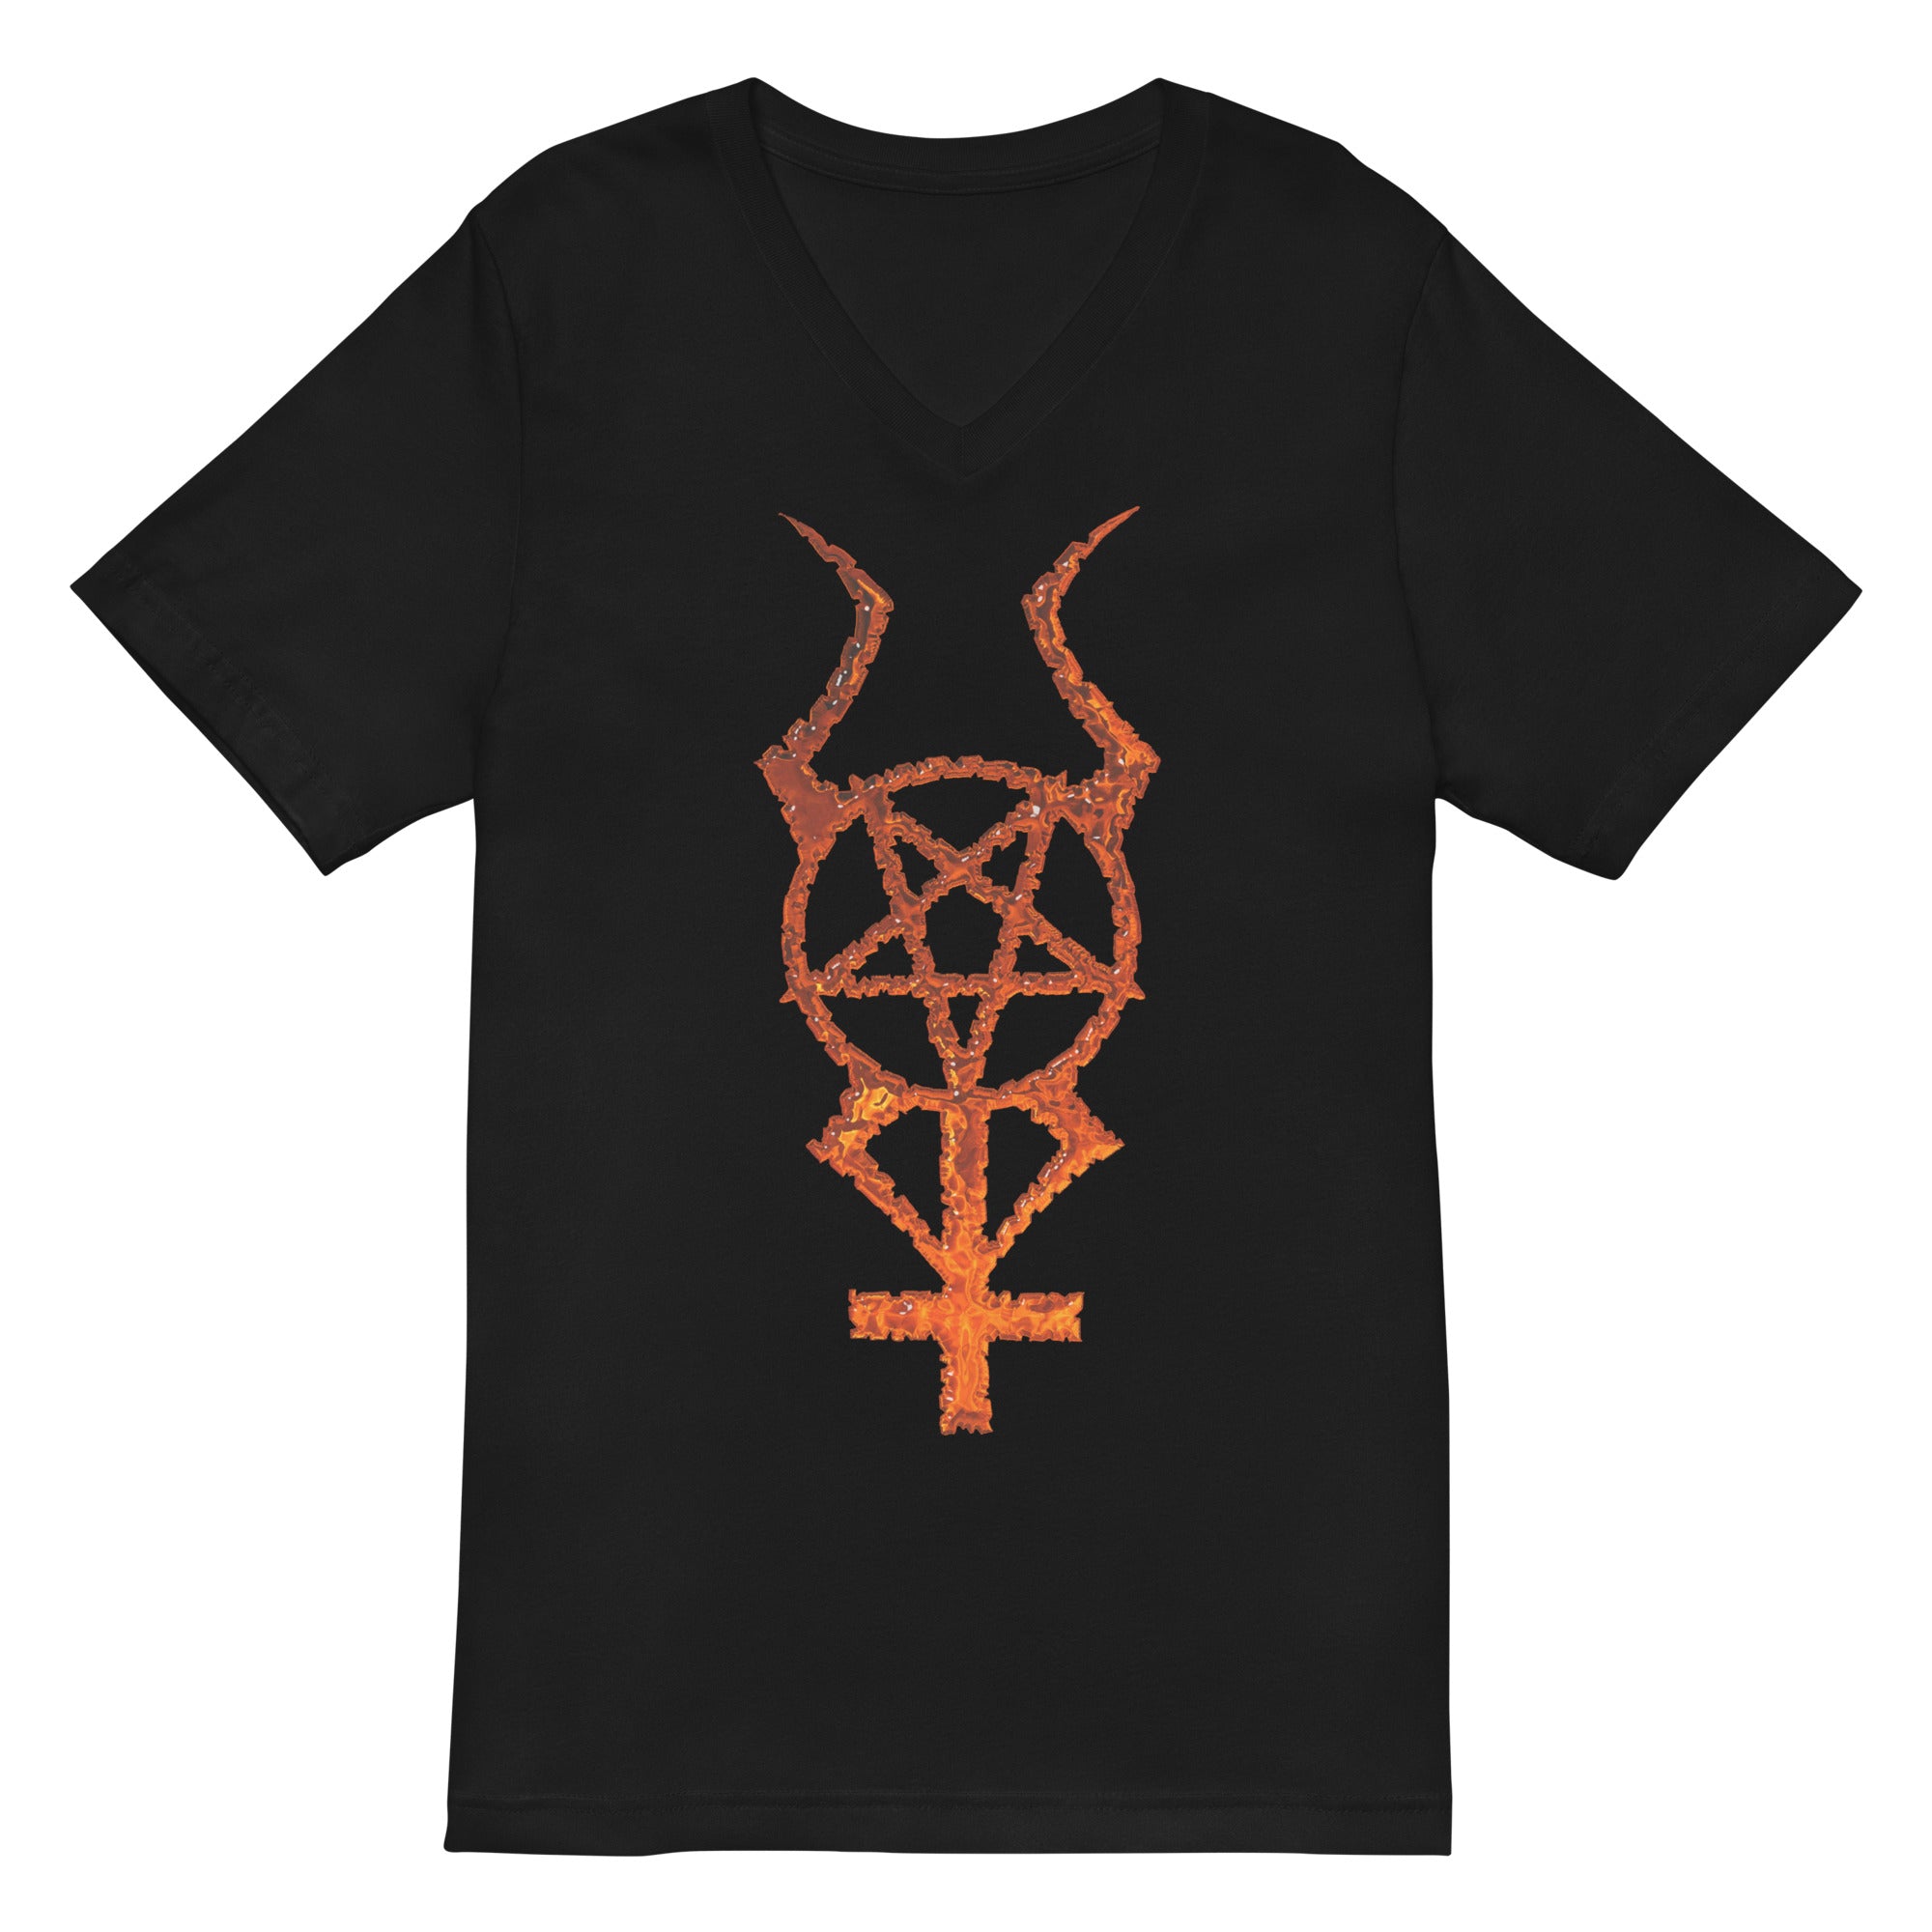 Flame Horned Pentacross Pentagram Cross Women’s Short Sleeve V-Neck T-Shirt - Edge of Life Designs